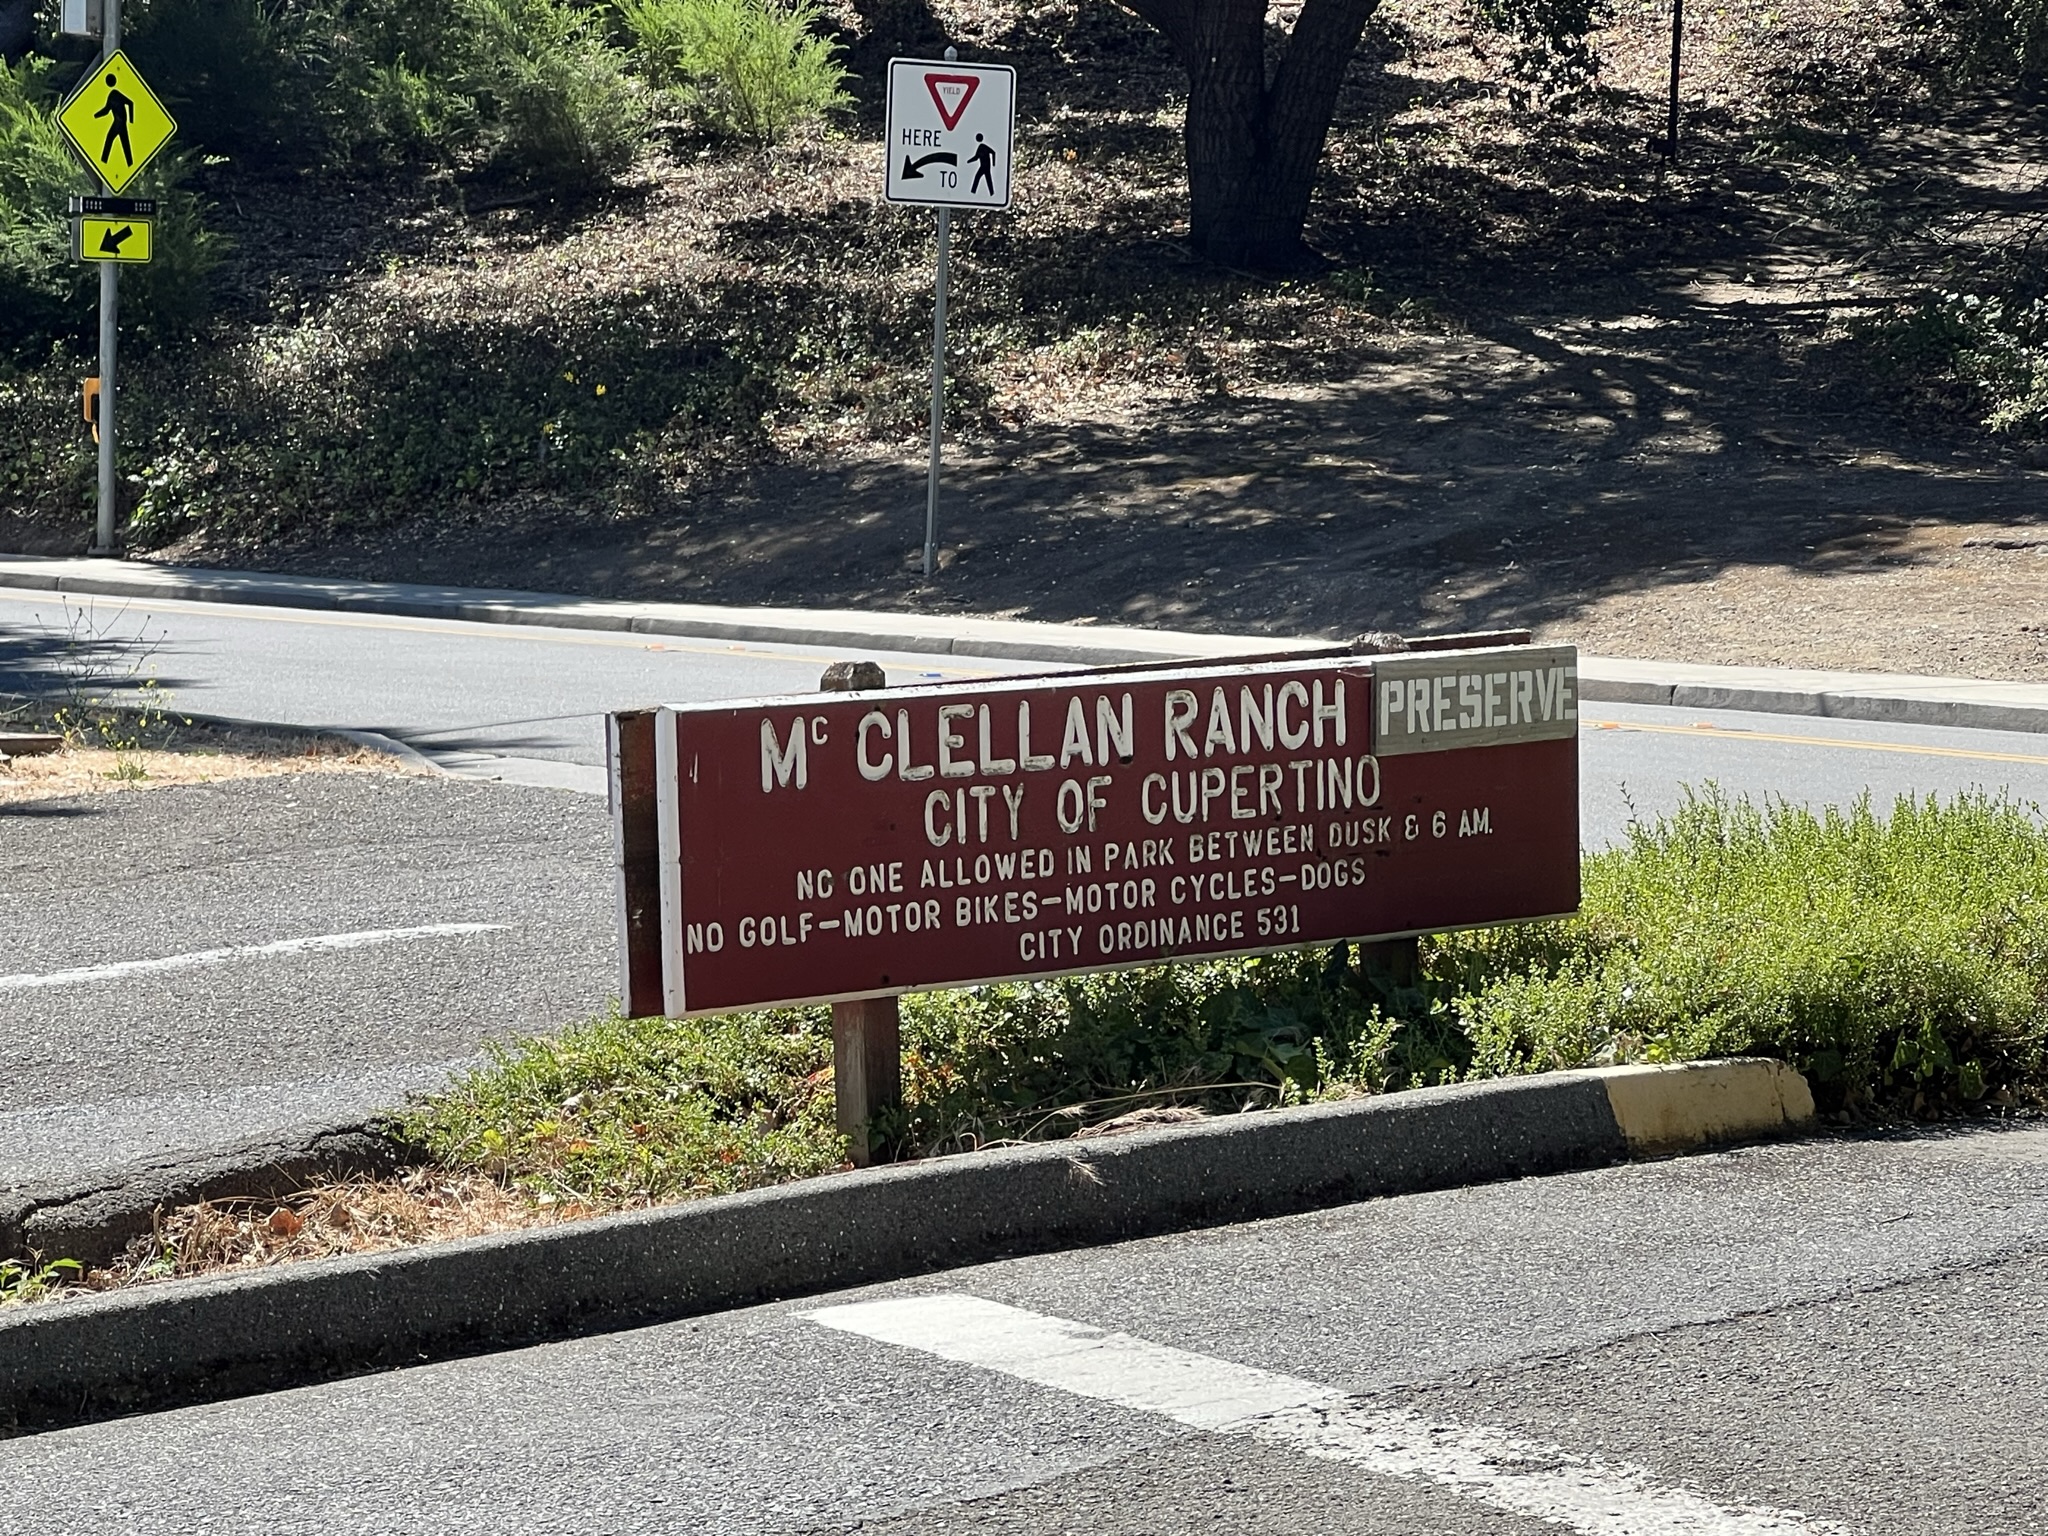 McClellan Ranch Preserve 入口处